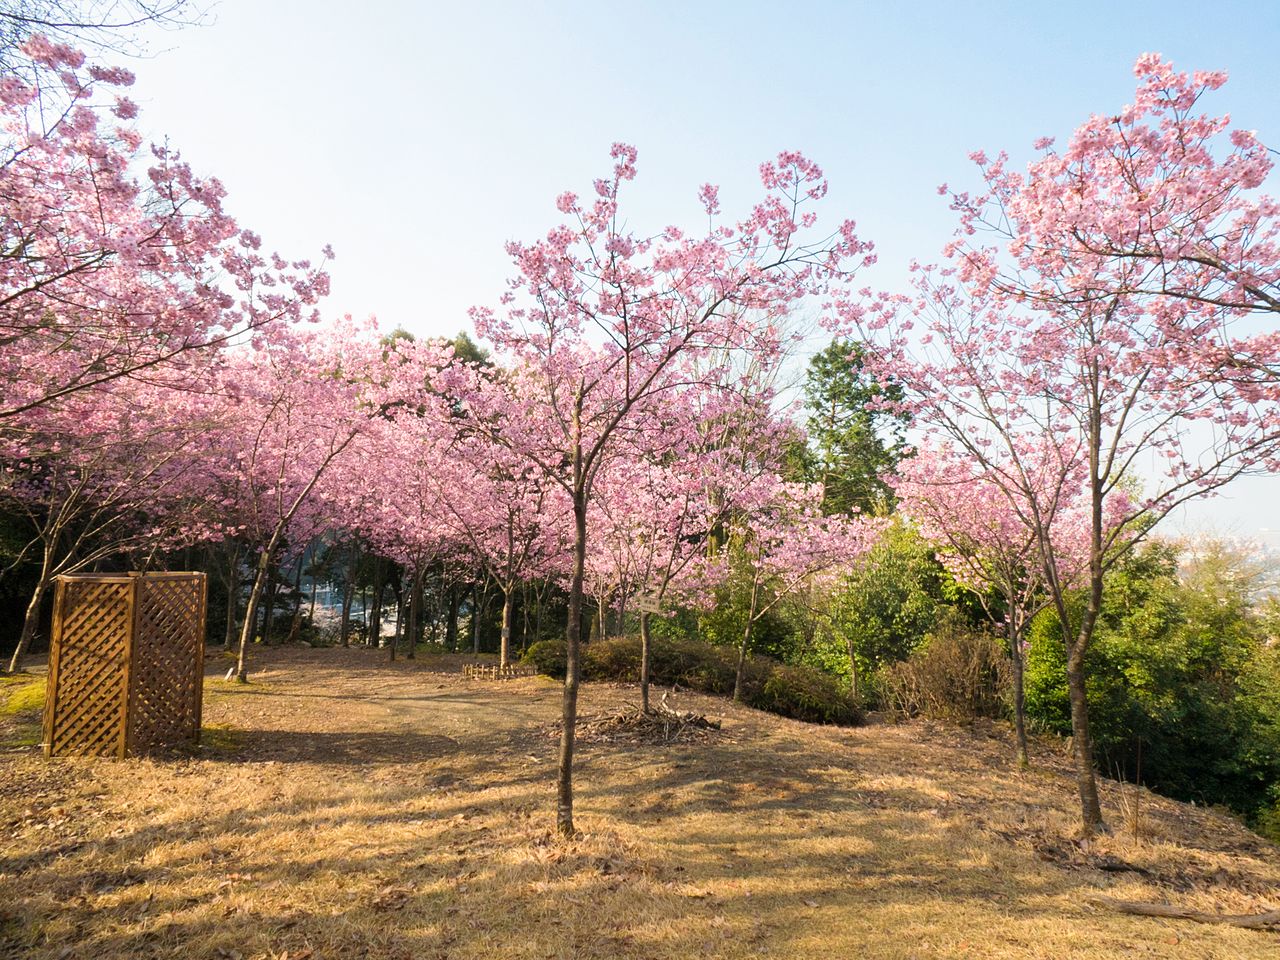 桜花苑の陽光桜は、濃いピンク色の花を咲かせる